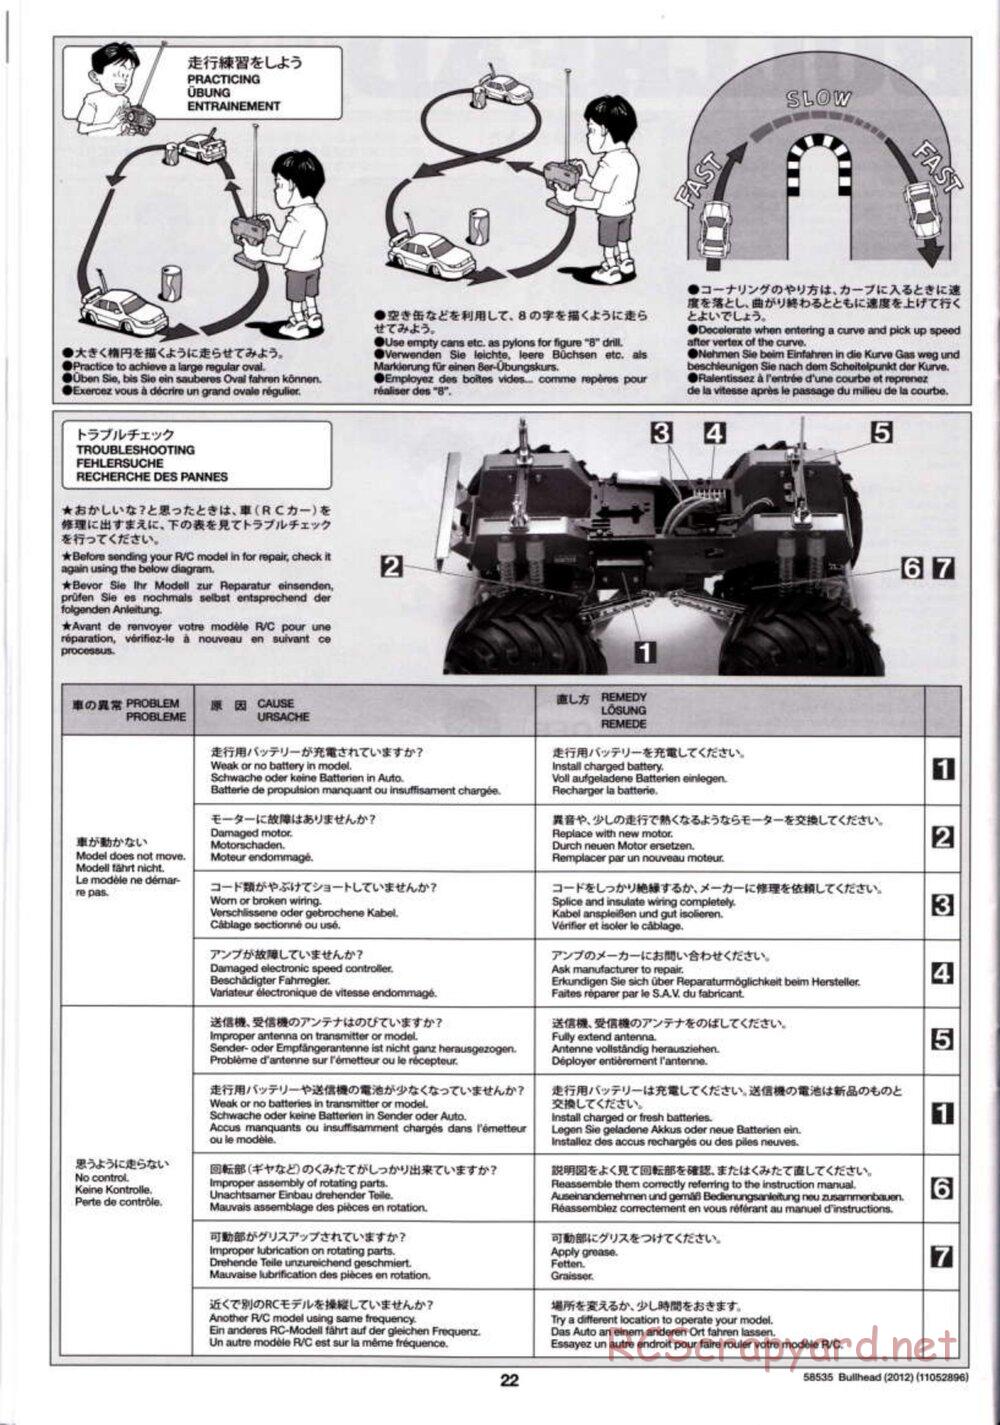 Tamiya - Bullhead 2012 - CB Chassis - Manual - Page 22